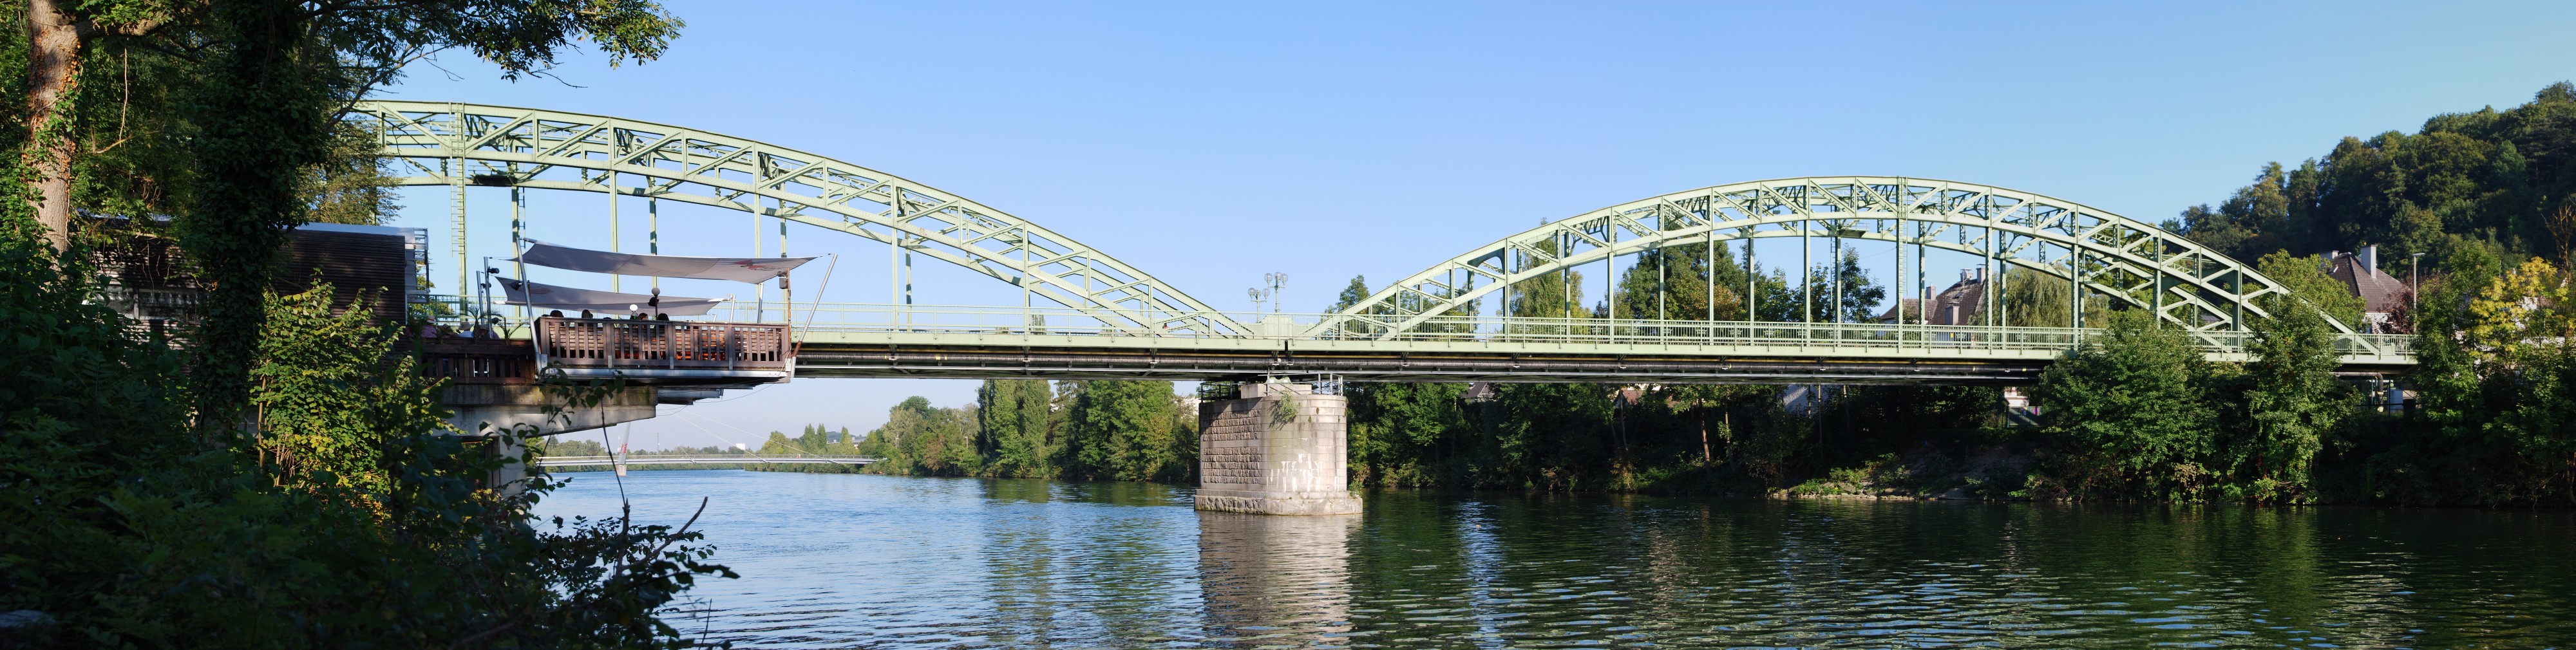 Traunbrücke Wels September 2013